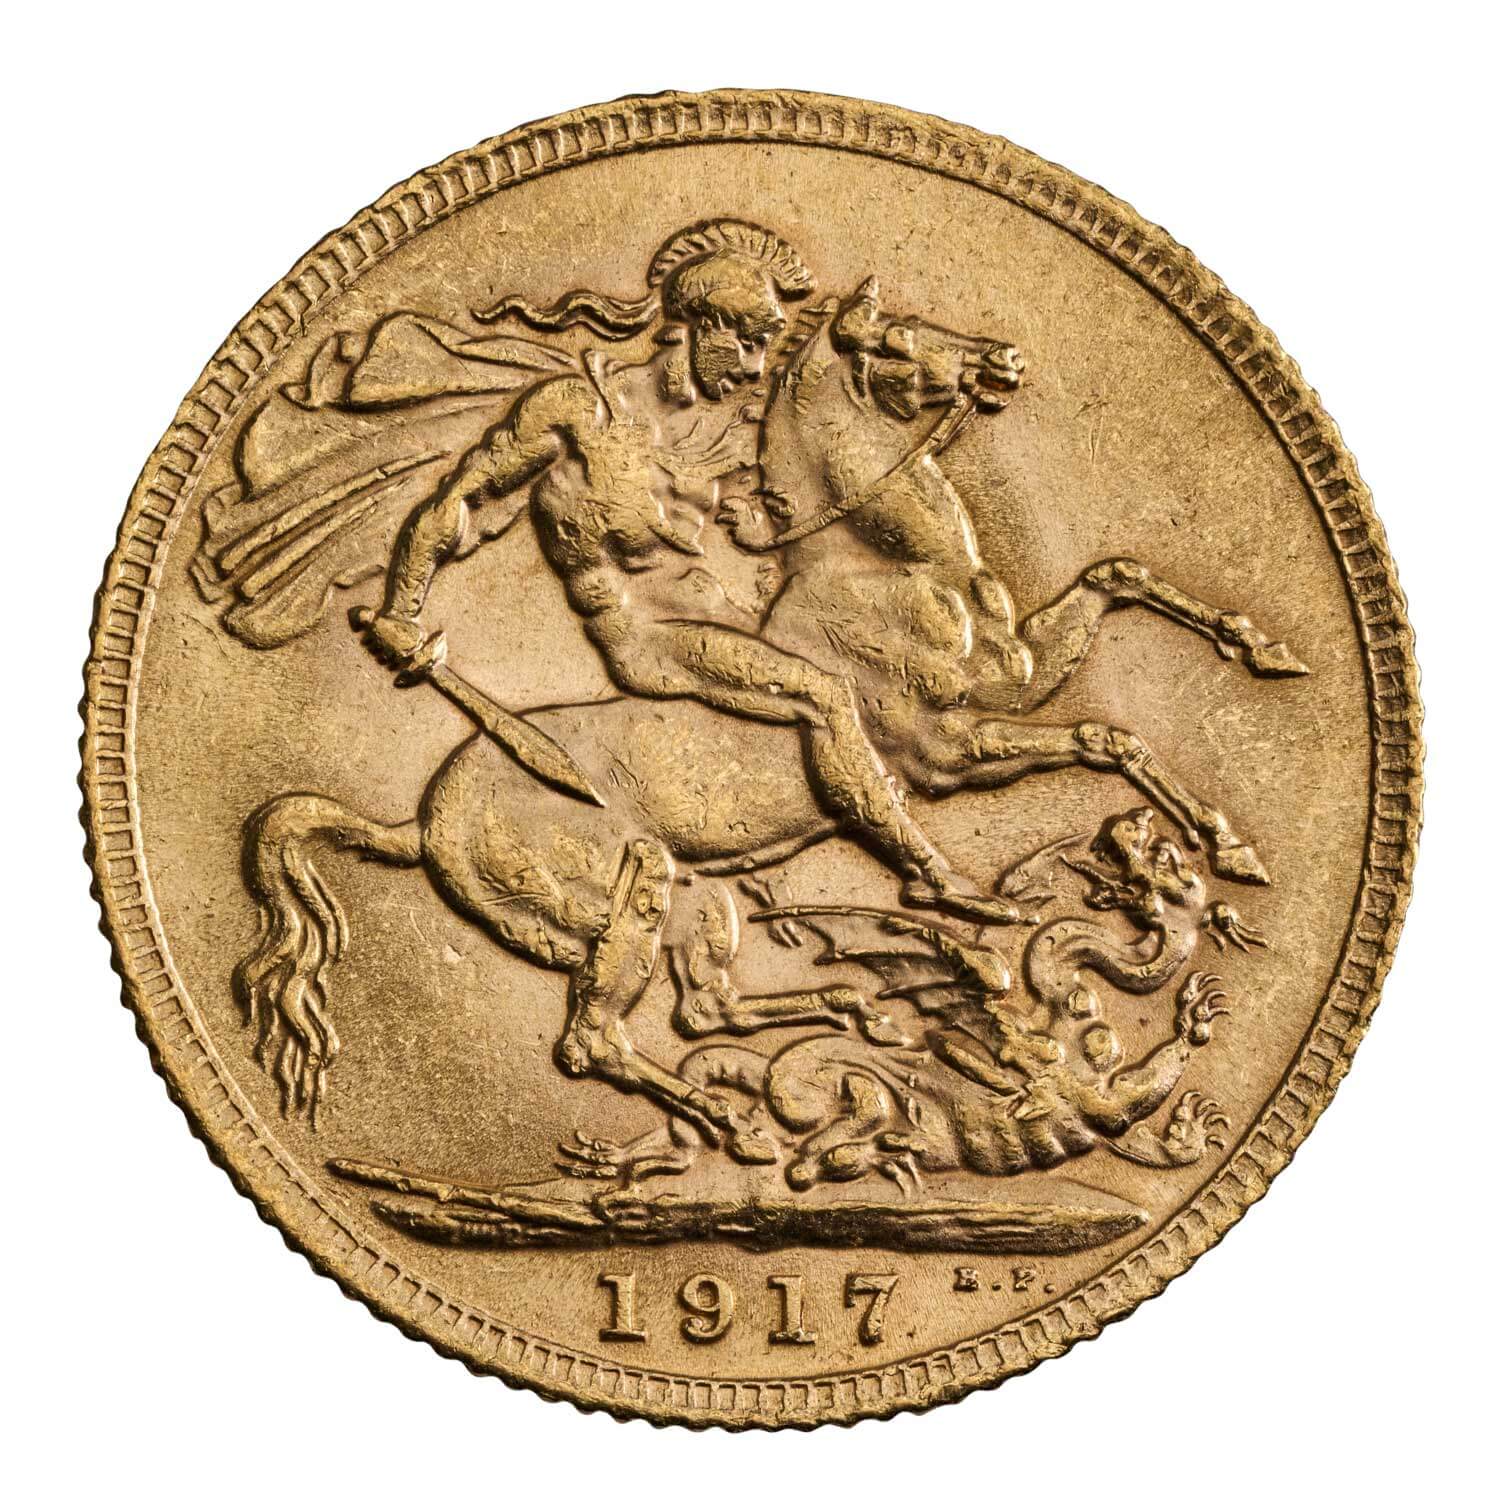 a 1917 gold sovereign